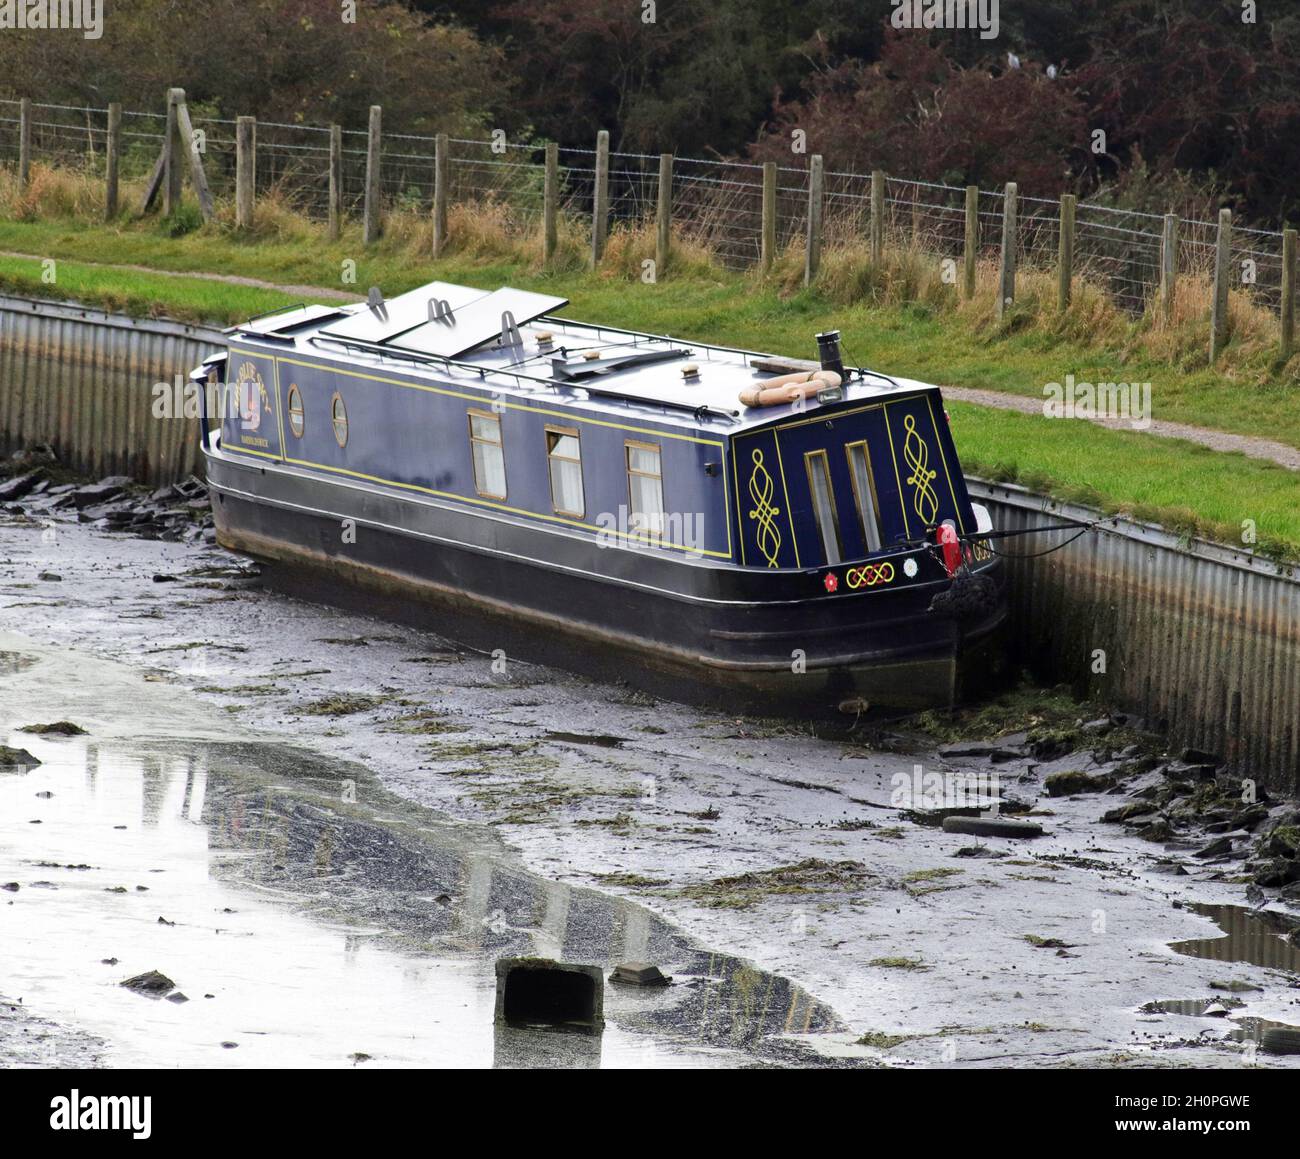 Am 11.10.21 ereignete sich ein Bruch im Leeds und Liverpool Kanal in der Nähe von Rishton in East Lancashire, bei dem dieses Boot ohne Wasser zum Schwimmen gestrandet war. Stockfoto